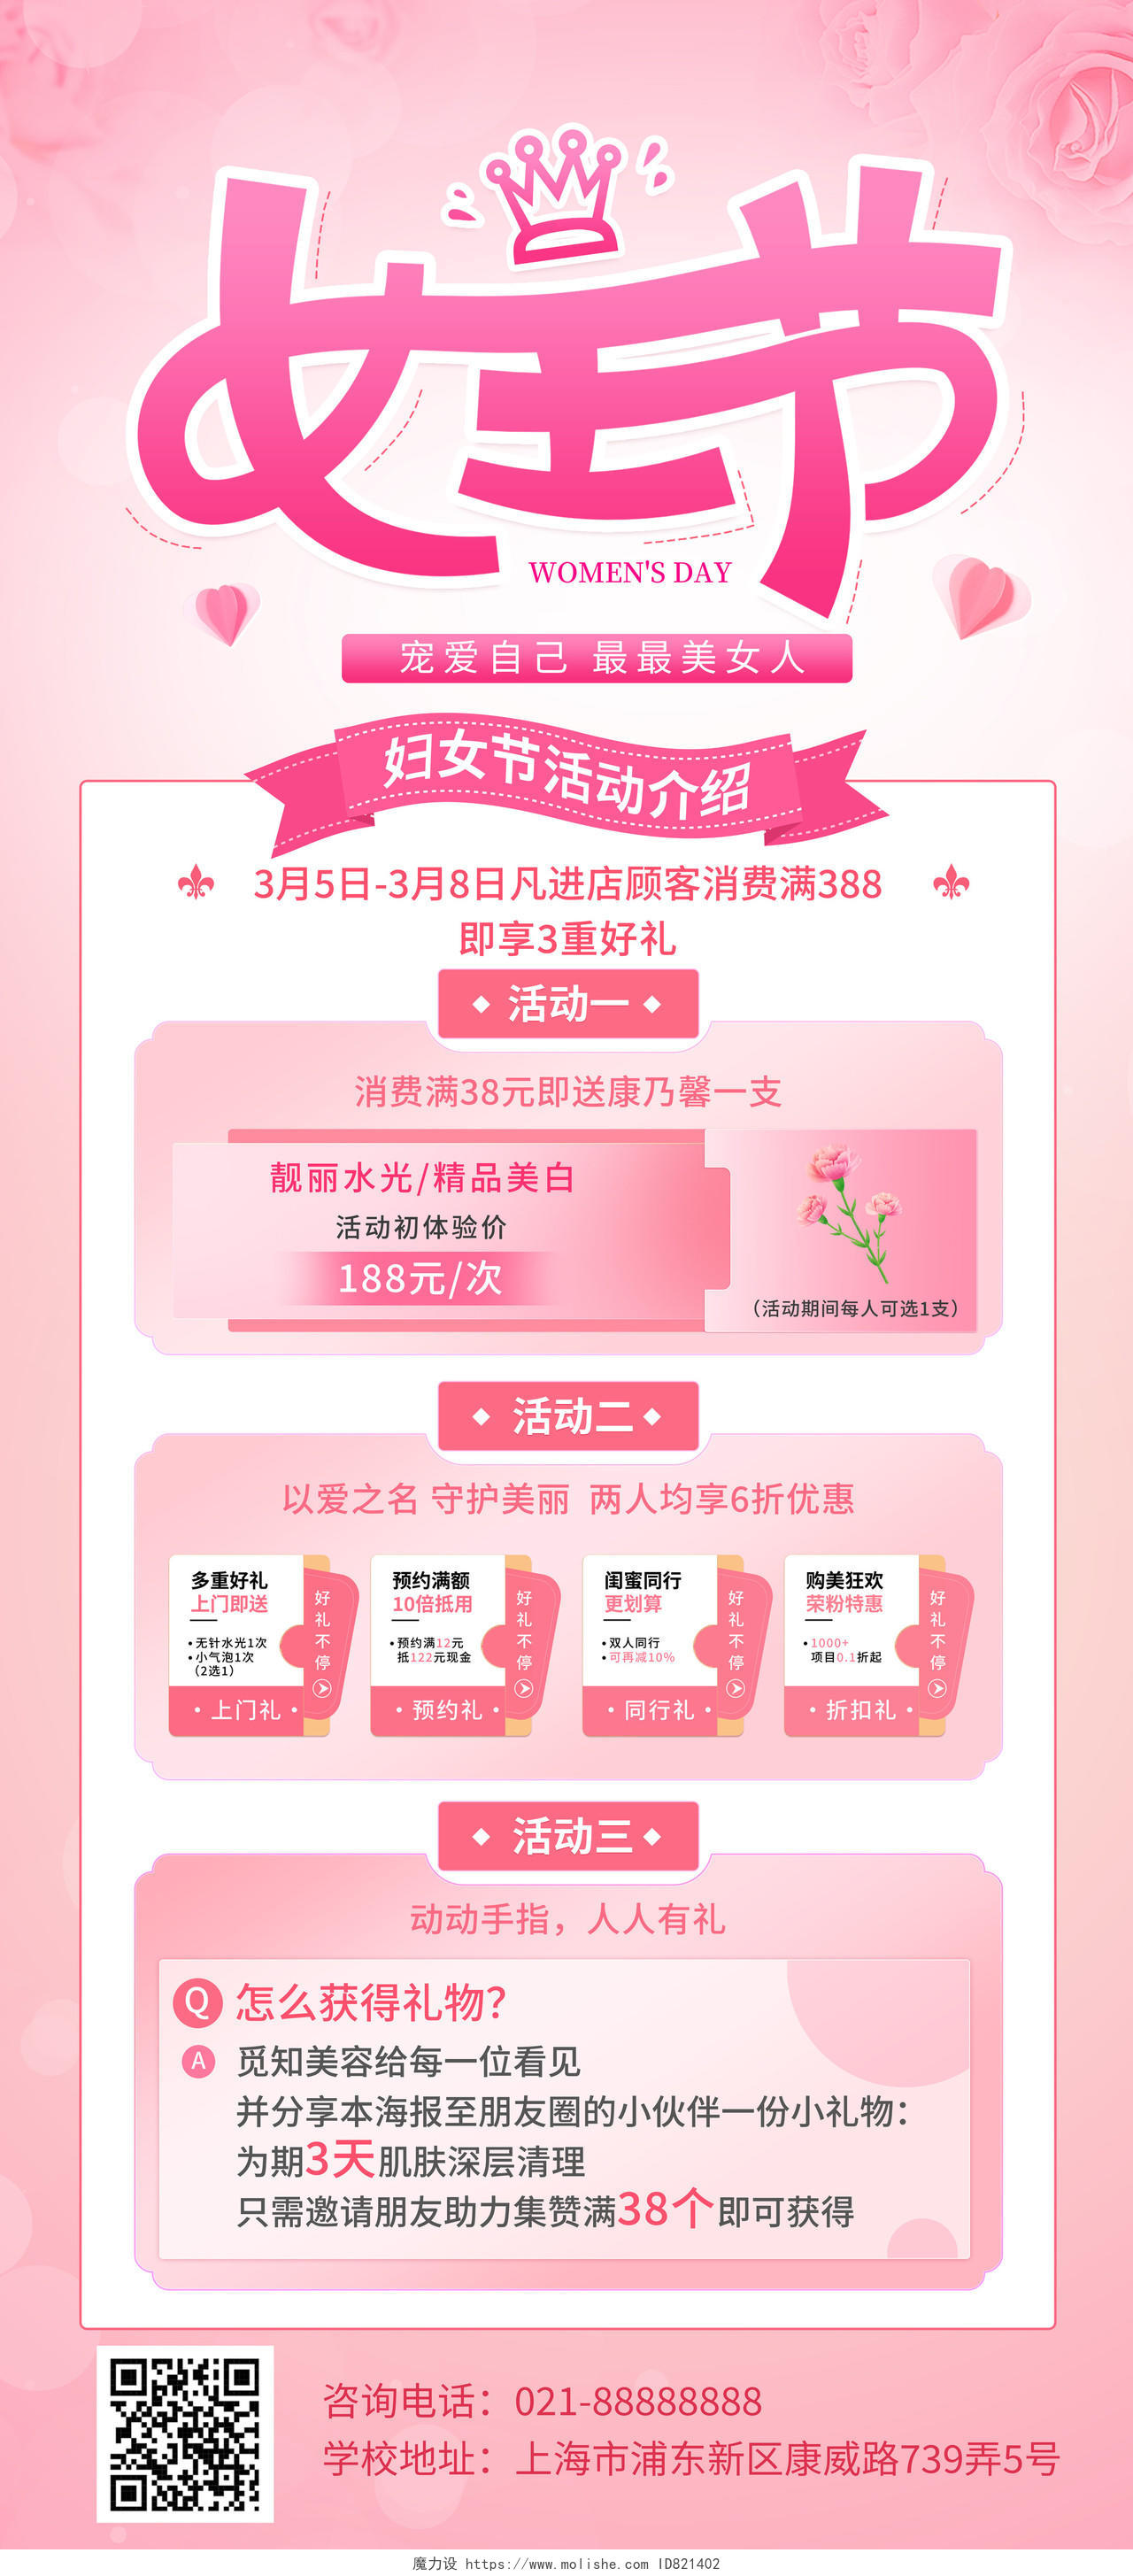 粉色大气38妇女节宣传促销活动展架易拉宝三八38妇女节